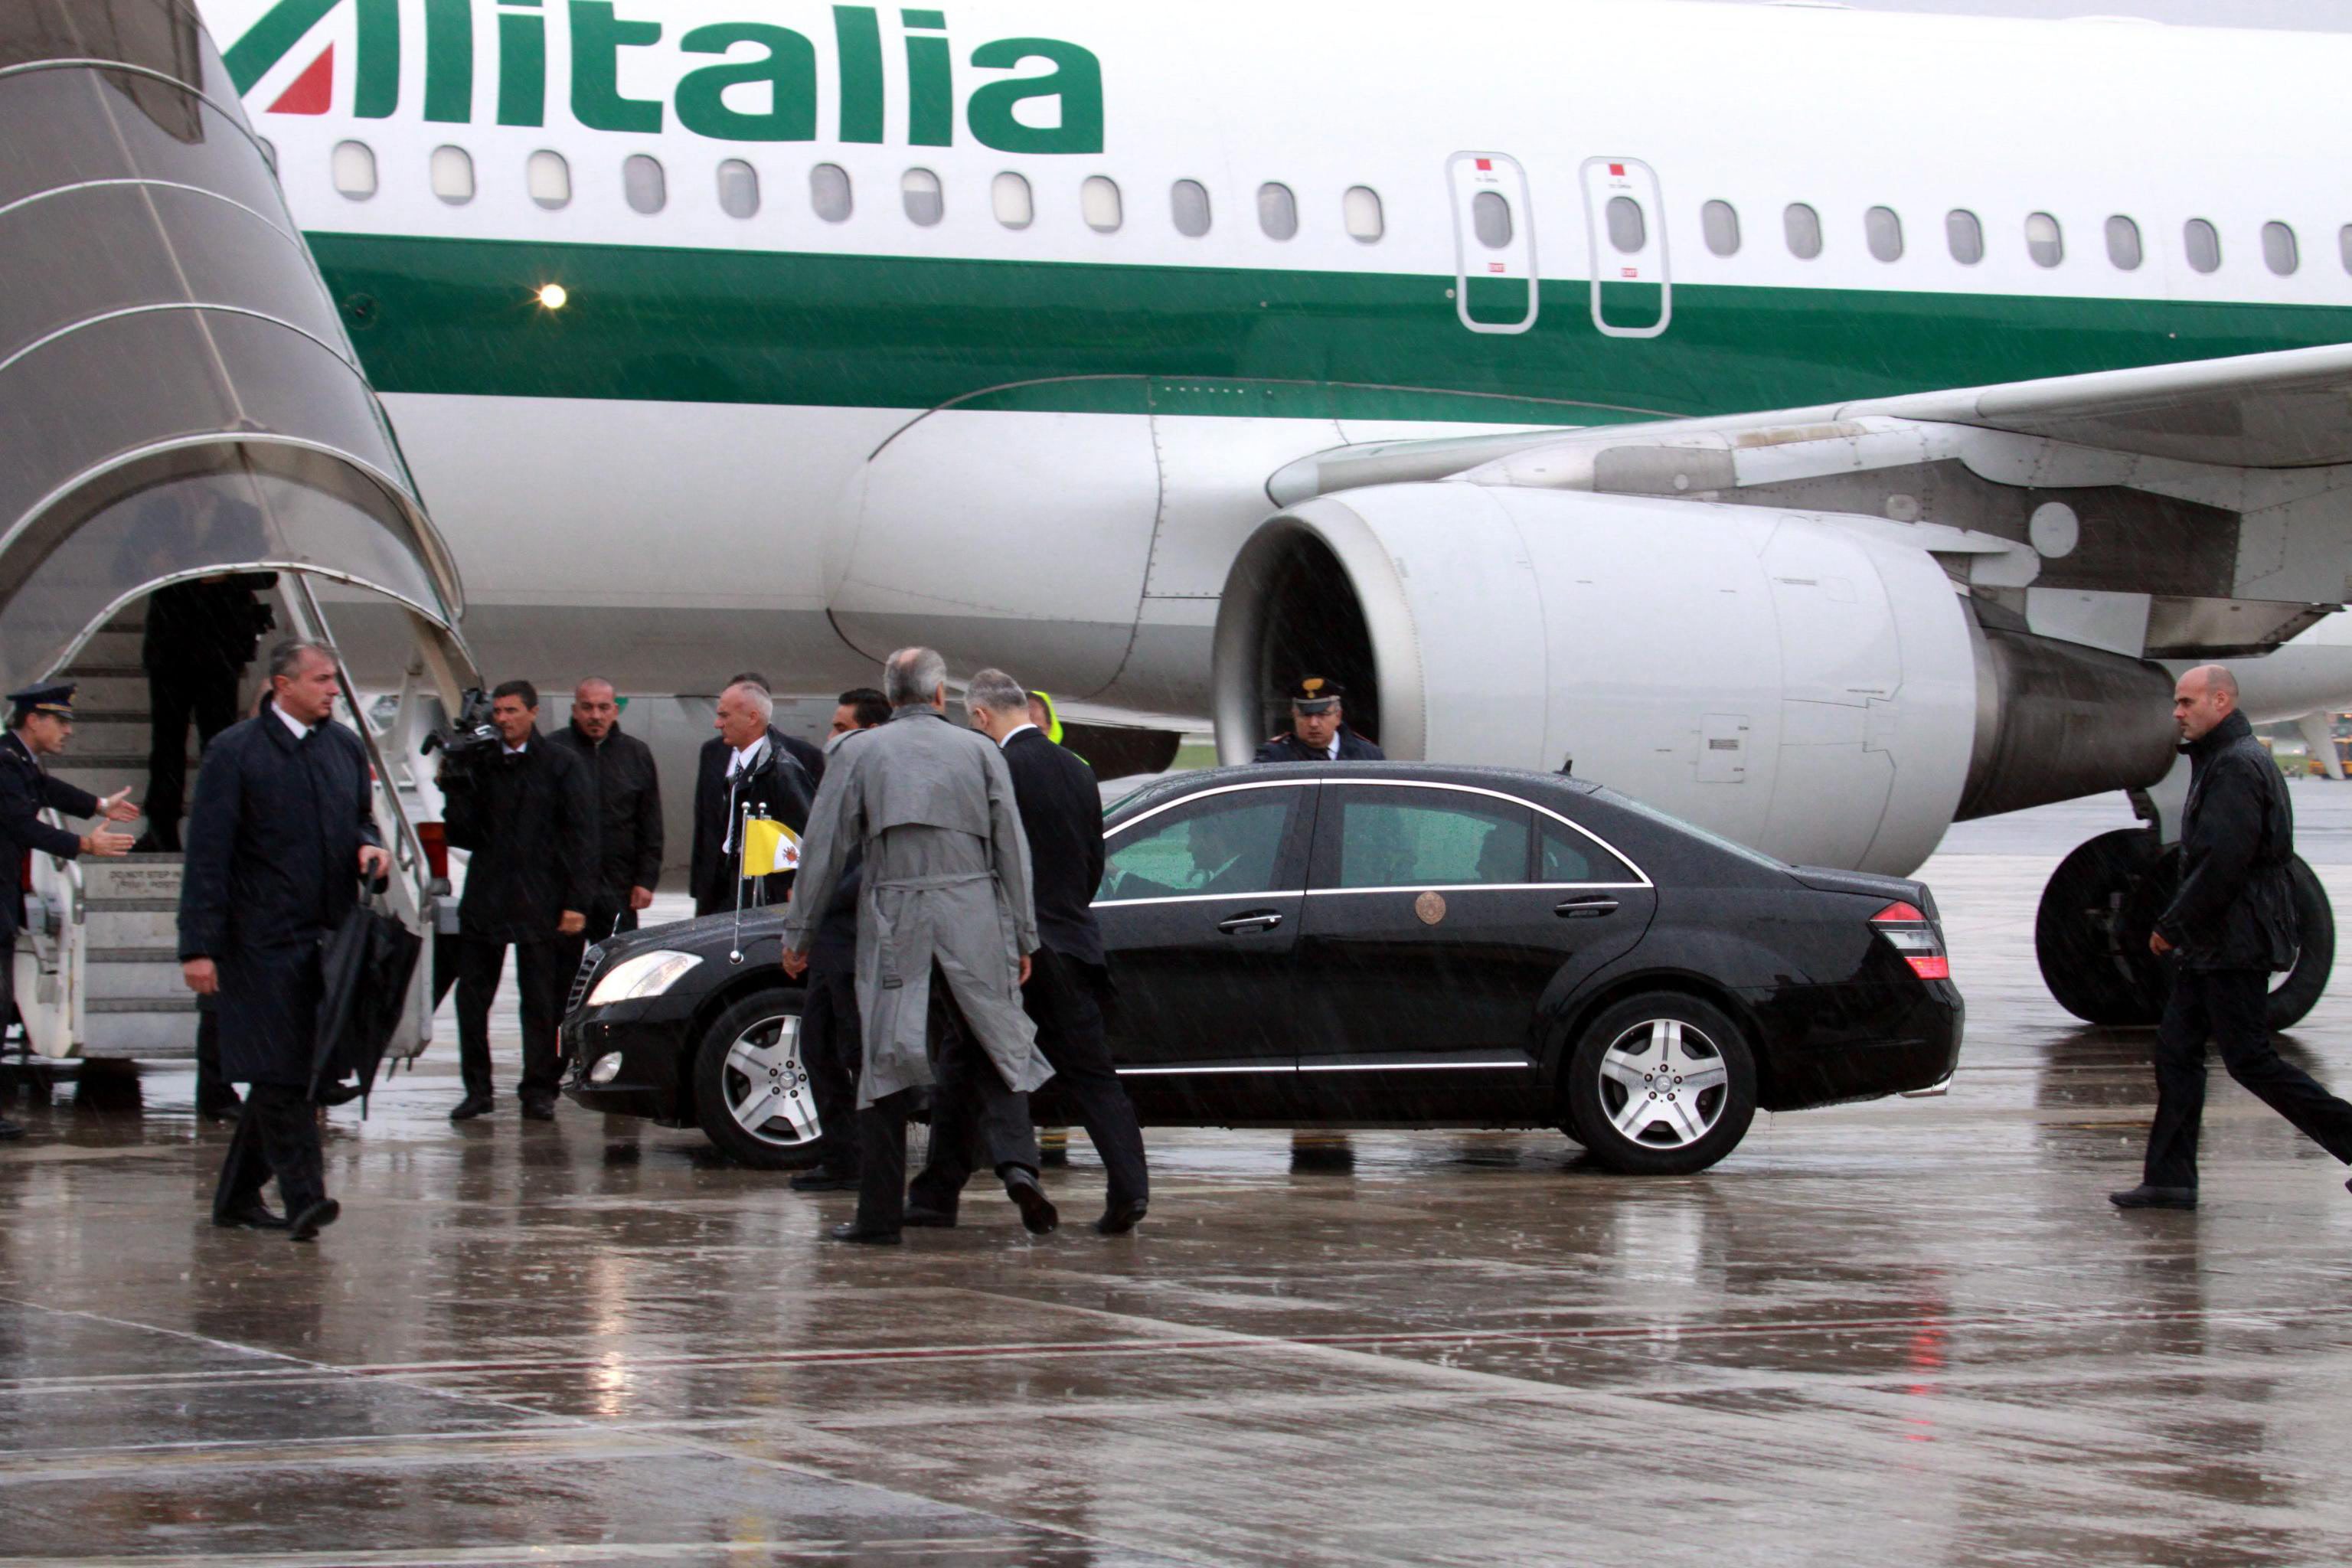 Het noodlijdende Italiaanse luchtvaartbedrijf Alitalia loopt het risico failliet te gaan als het binnen enkele weken zijn kapitaal niet weet te verhogen. Dat stelden bronnen in de Italiaanse overheid dinsdag tegen persbureau Reuters. De aandeelhouders van Alitalia stemmen op 14 oktober over een kapitaalsverhoging van minimaal 100 miljoen euro die nodig is om het concern op korte termijn in de lucht te houden. Volgens analisten heeft het echter zo'n 500 miljoen euro nodig om door te gaan en een strategiewijziging door te voeren. De Italiaanse overheid probeert het staatsspoorbedrijf Ferrovie dello Stato zo ver te krijgen dat het investeert in Alitalia, zo meldde de krant Il Messagero eerder al. Op deze manier probeert de Italiaanse premier Enrico Letta volgens de bronnen te voorkomen dat Air France-KLM een beslissende invloed krijgt bij de luchtvaartmaatschappij. De Nederlands-Franse combinatie heeft al een belang van 25 procent in Alitalia, en voert naar verluidt gesprekken om dat belang uit te breiden. Daarmee zou Air France-KLM Alitalia van de zeer nodige cash voorzien, maar dat zou alleen onder zeer strikte voorwaarden gebeuren.